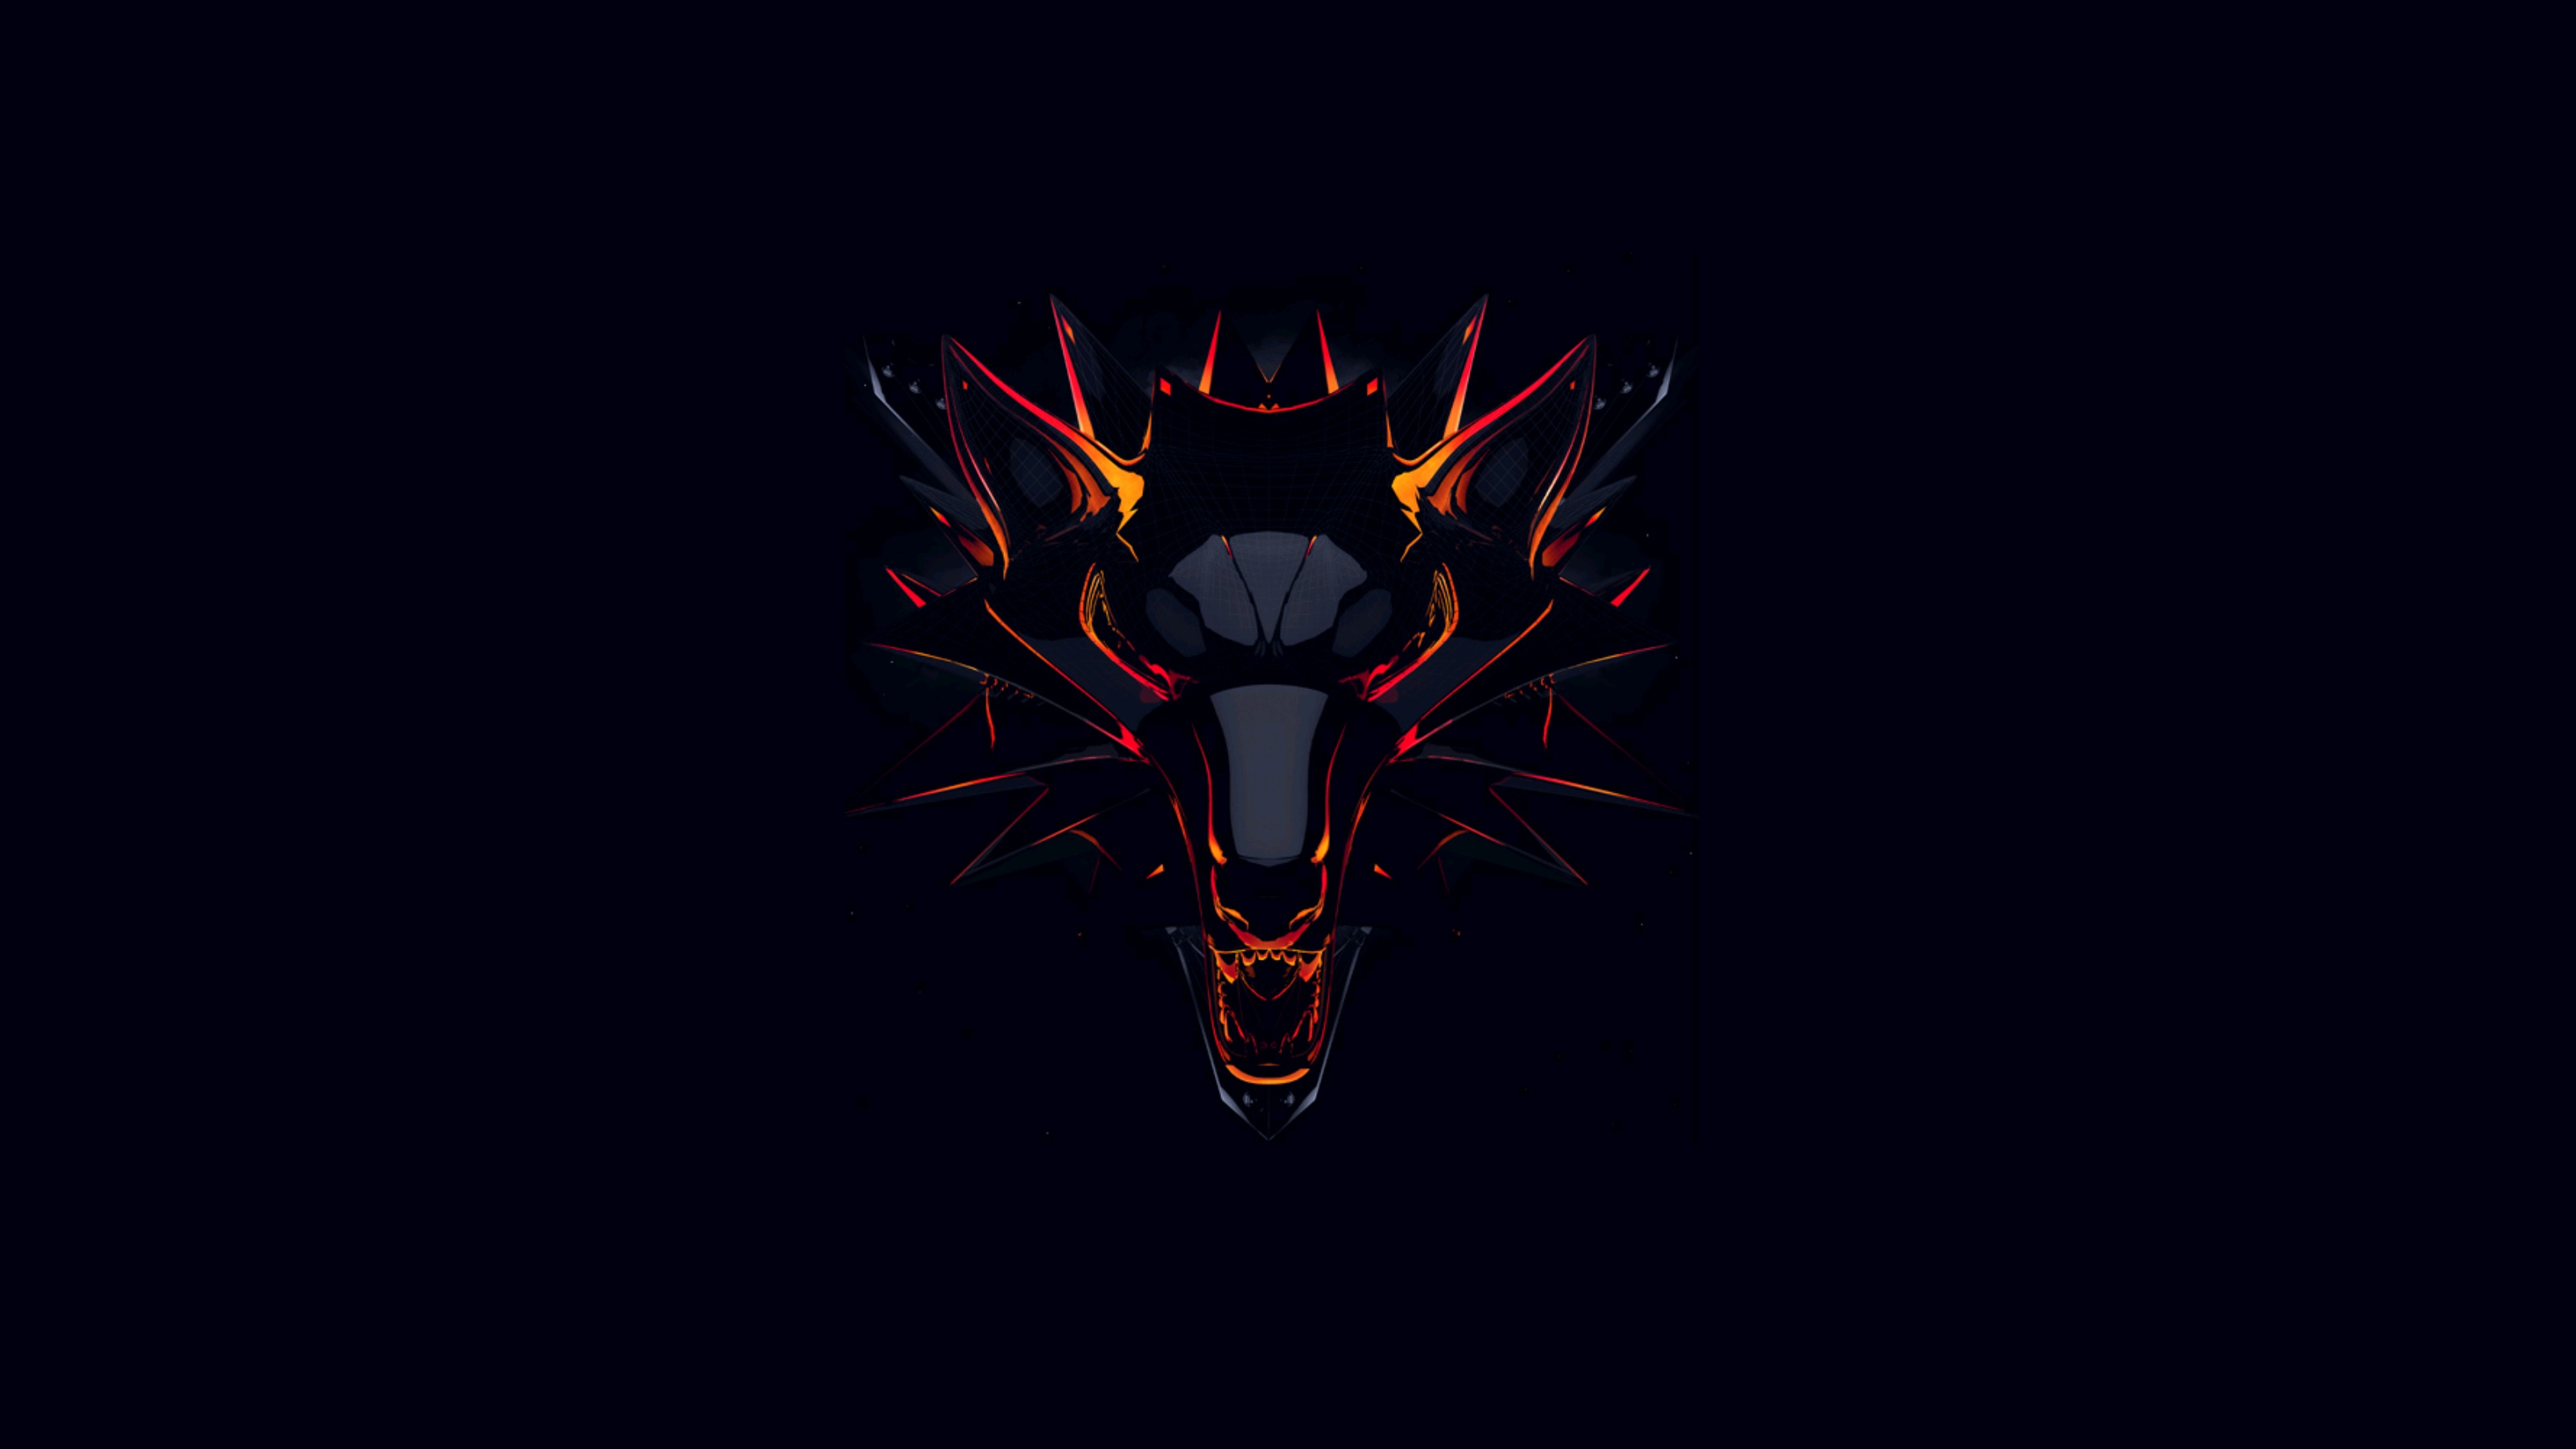 Đây là logo của trò chơi máy tính The Witcher trên nền đen desktop. Sự phối hợp đặc biệt giữa logo và nền đen sẽ tạo nên một bầu không khí đầy lạnh lẽo và khó quên. Hãy xem hình ảnh để trải nghiệm những cảm xúc này!